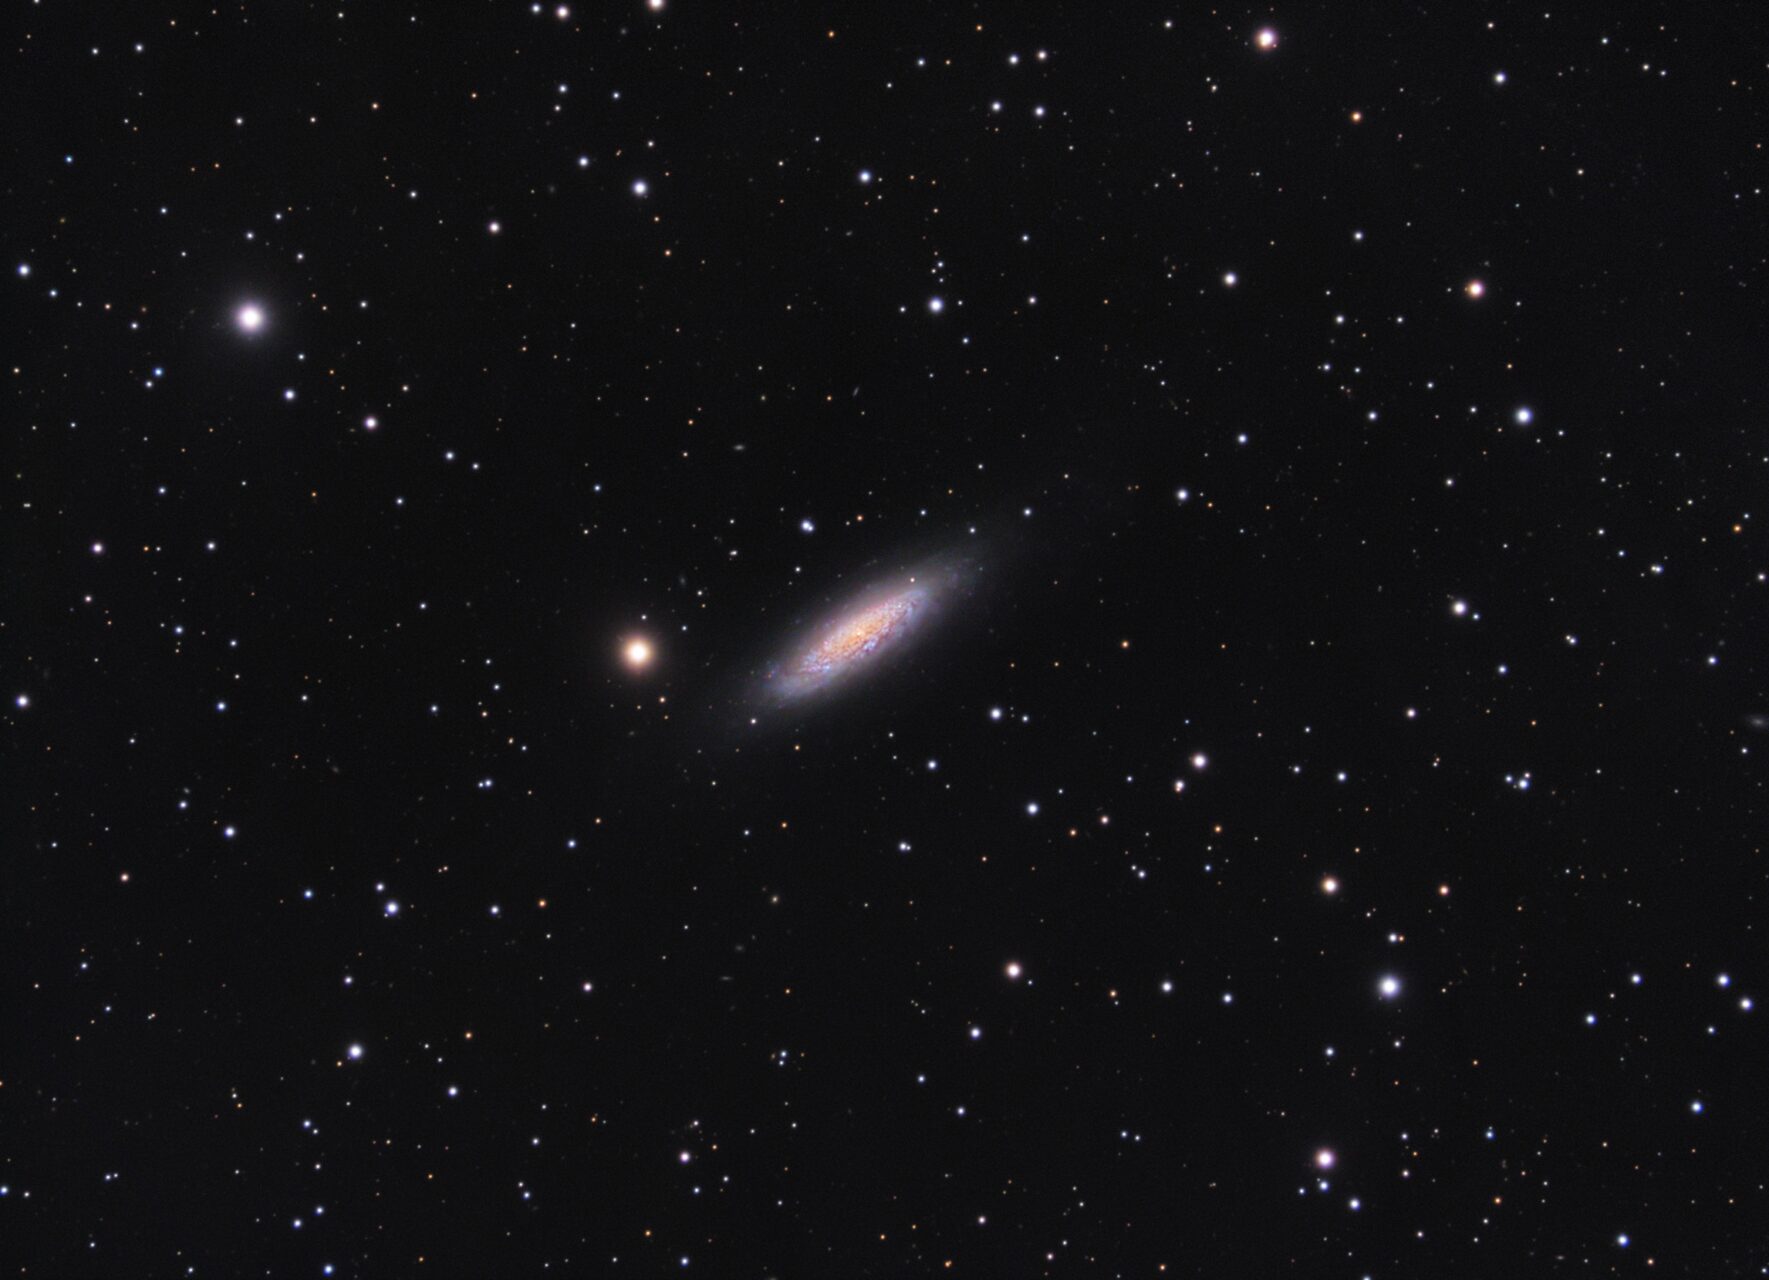 NGC 6503